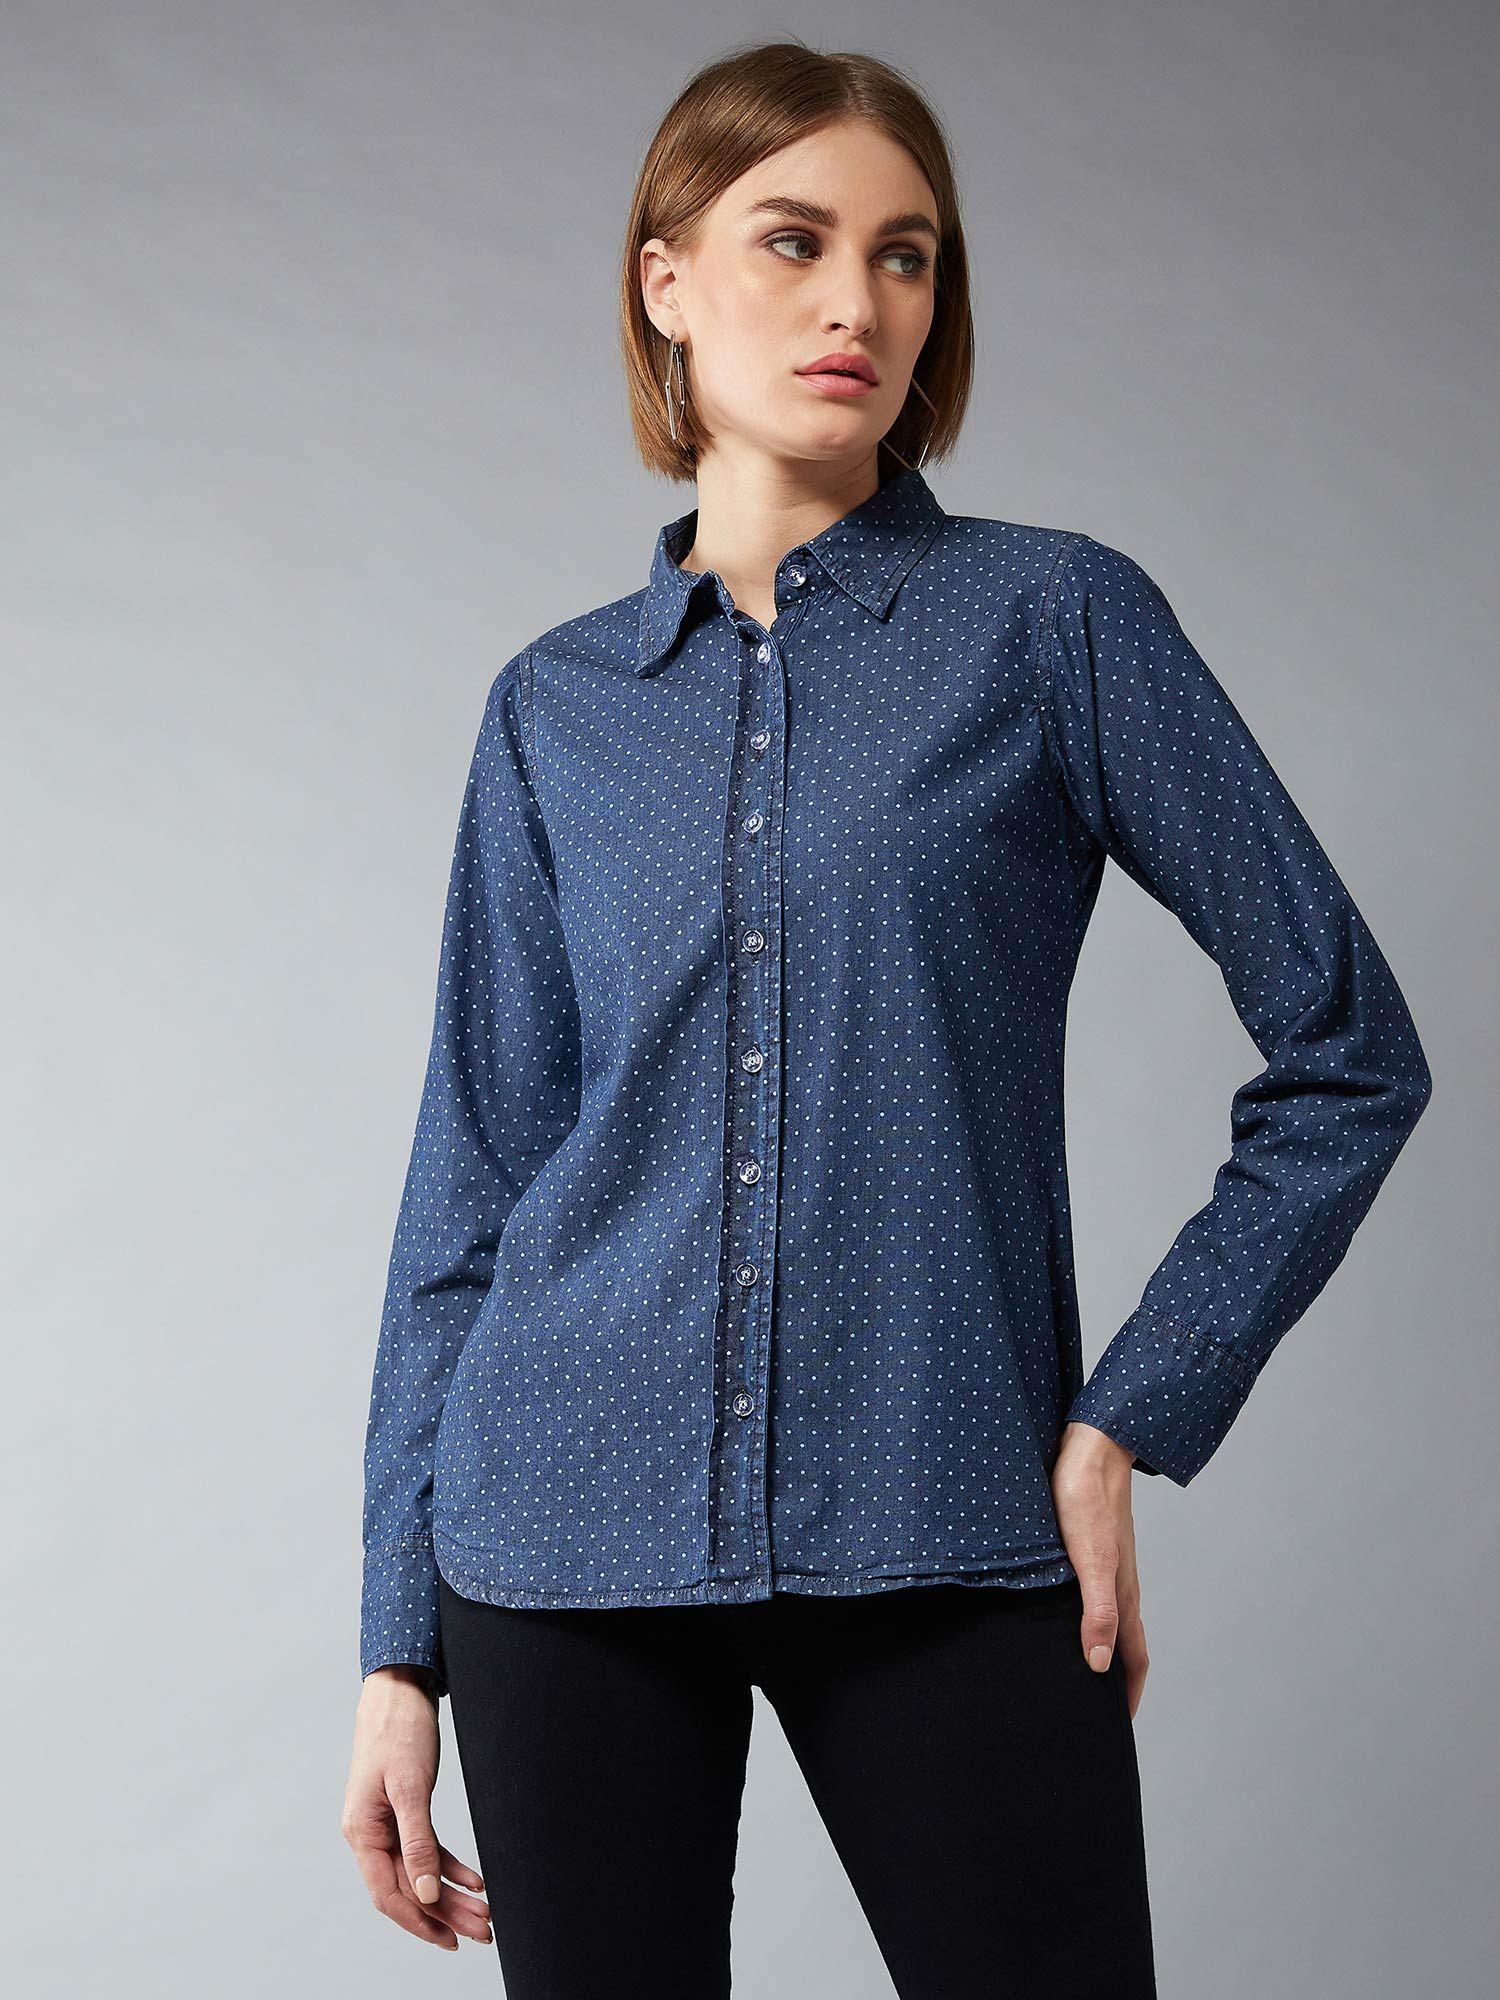 navy blue polka dots shirt